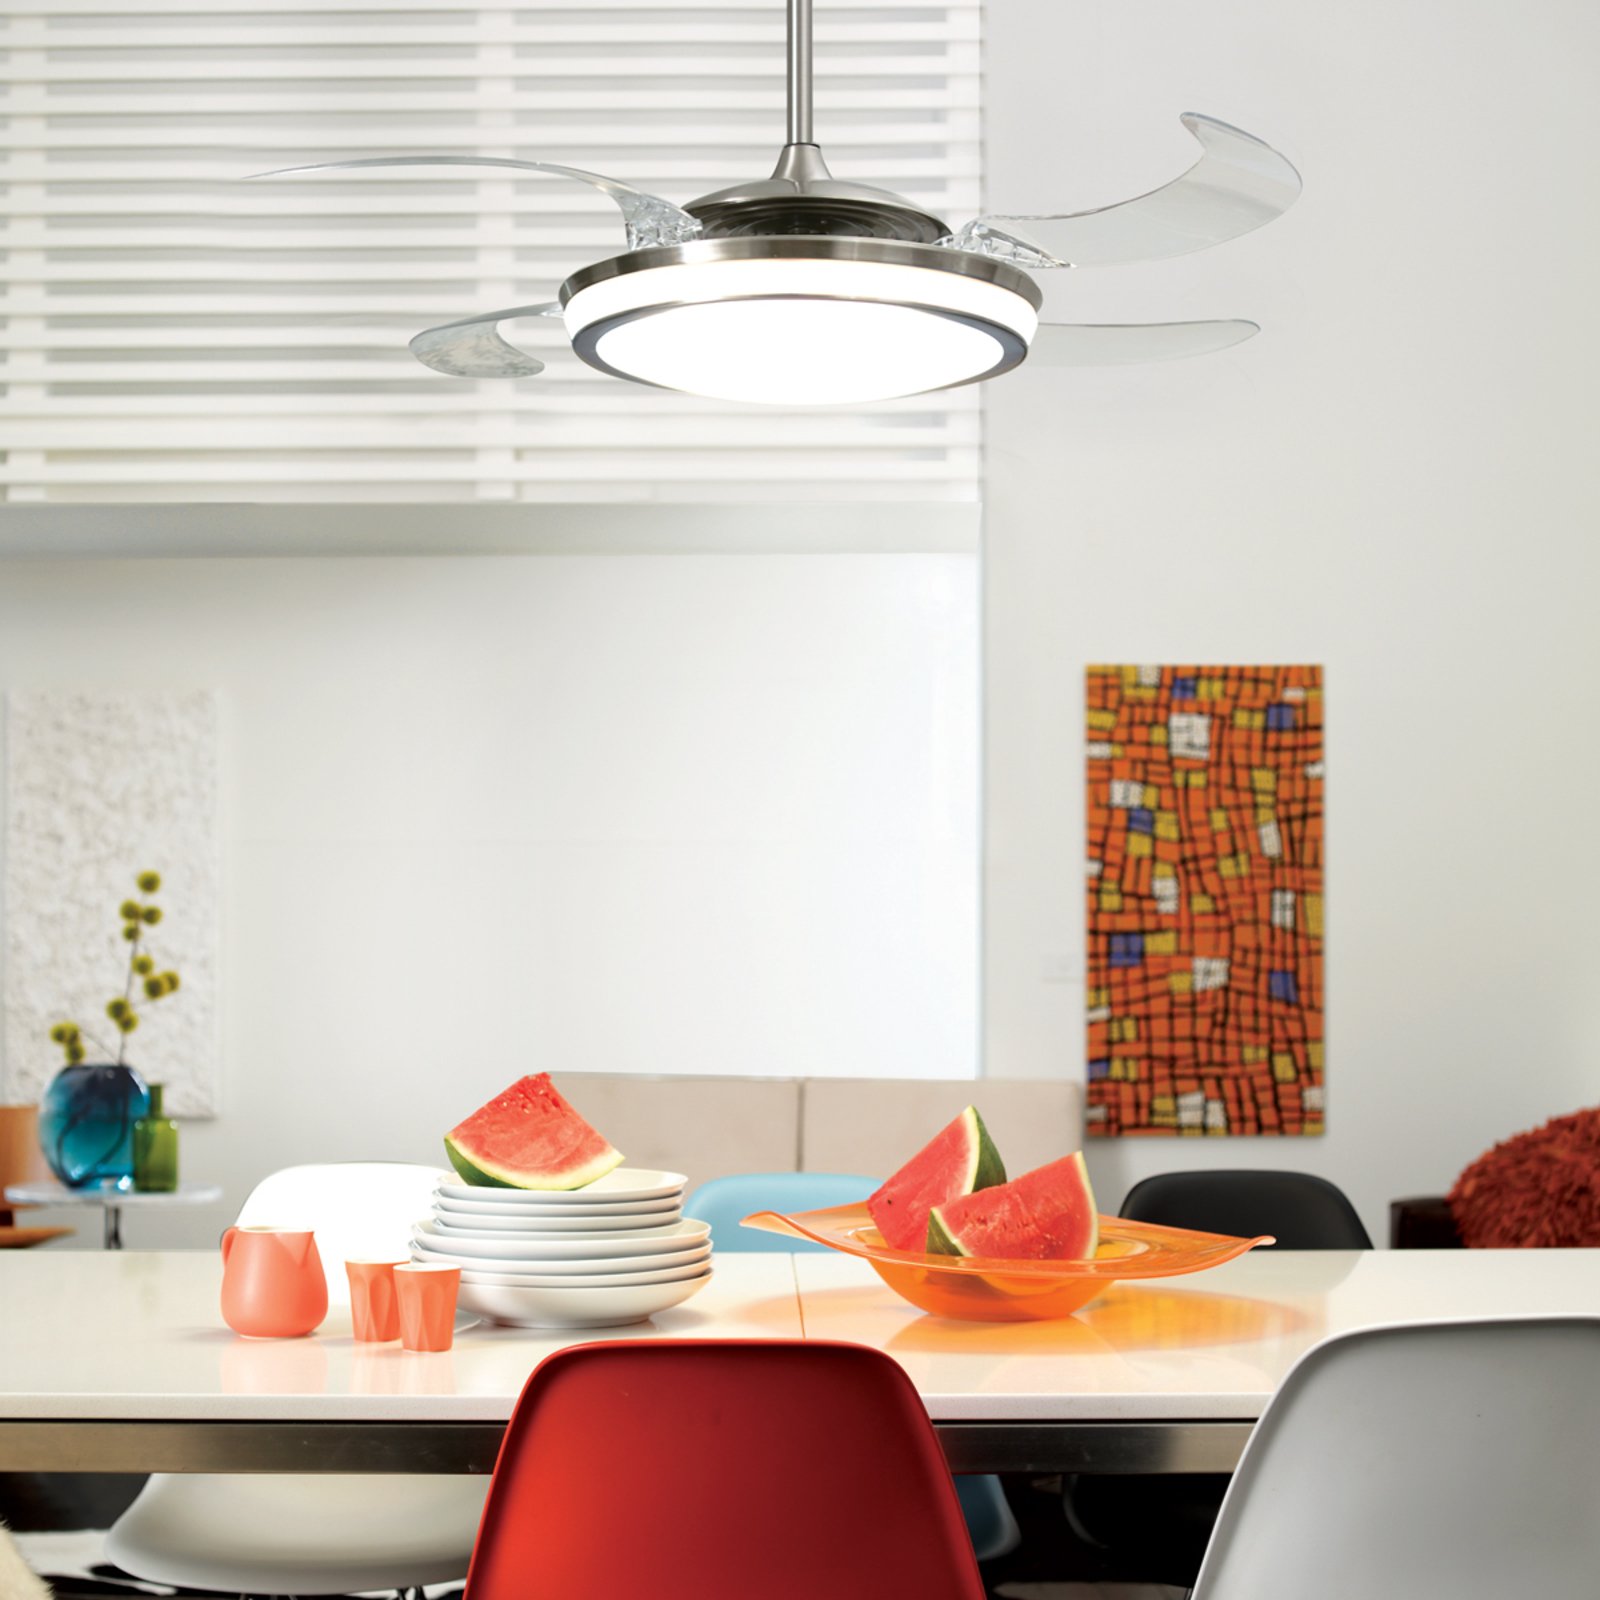 Beacon LED ceiling fan Fanaway Evo 1, quiet, 121 cm